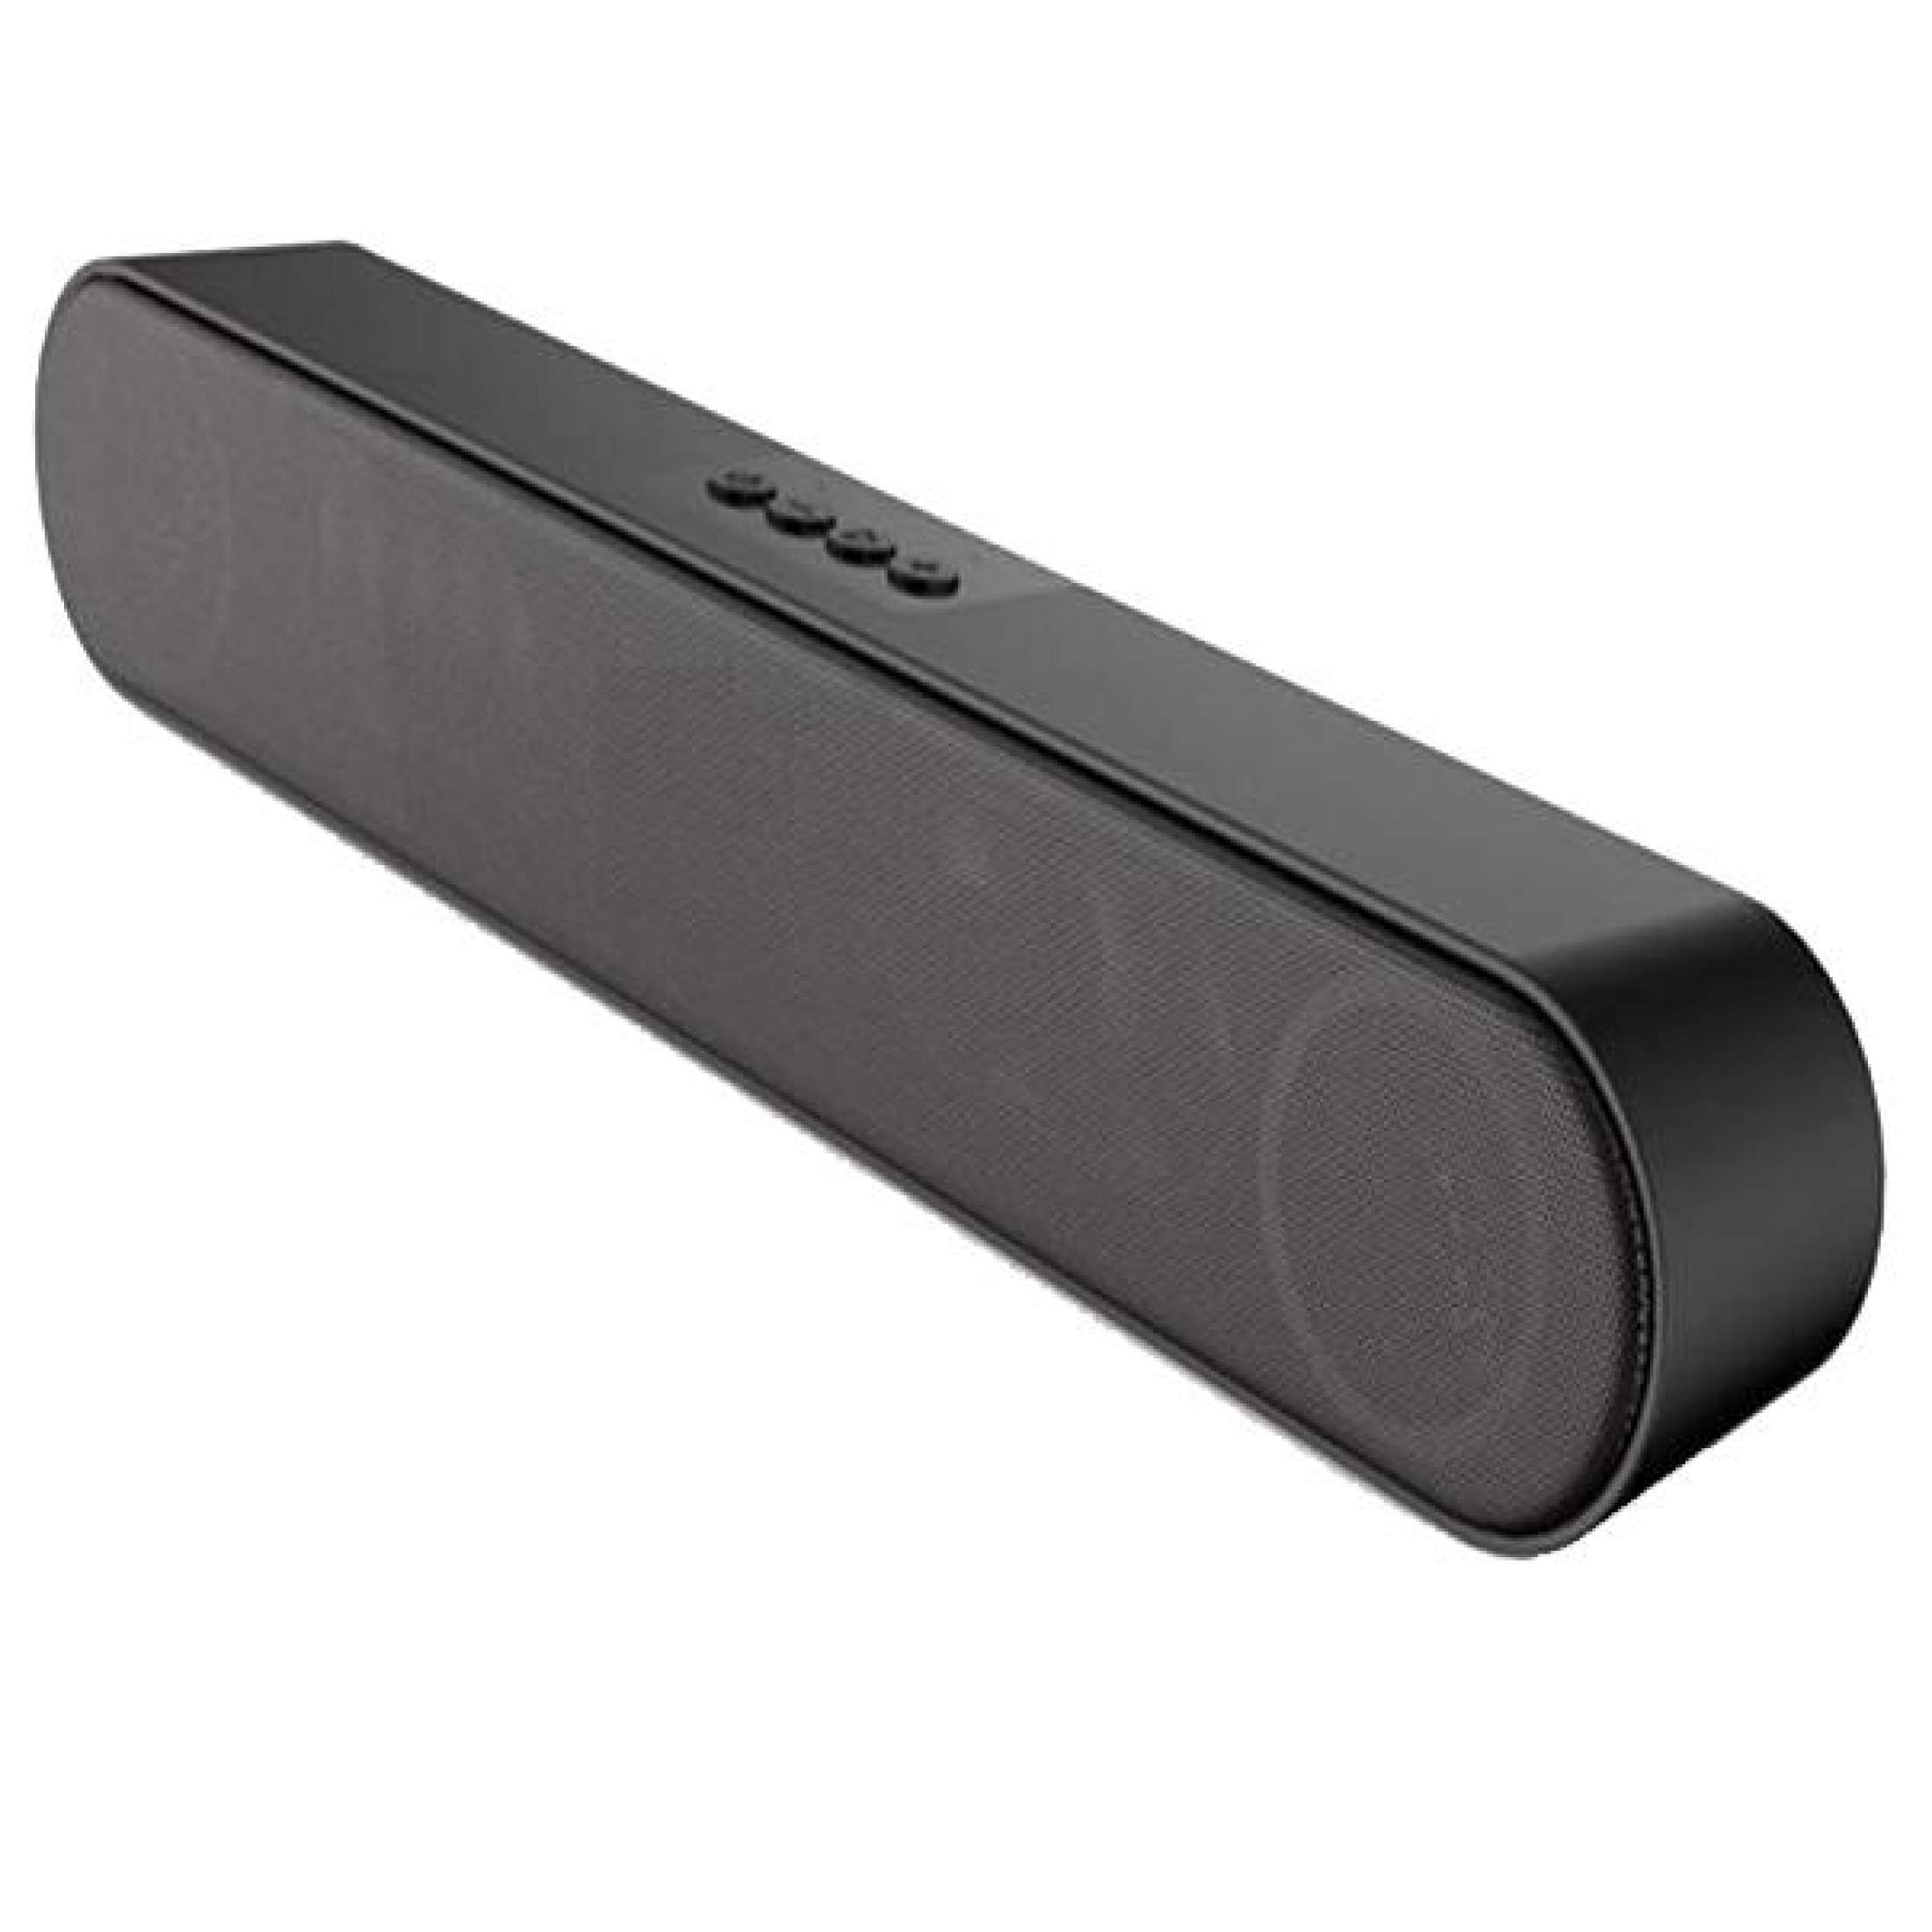 Loa Bluetooth 5.0 KIMISO A25 siêu Bass soundbar Hifi Đen PF163 - Hàng Chính Hãng